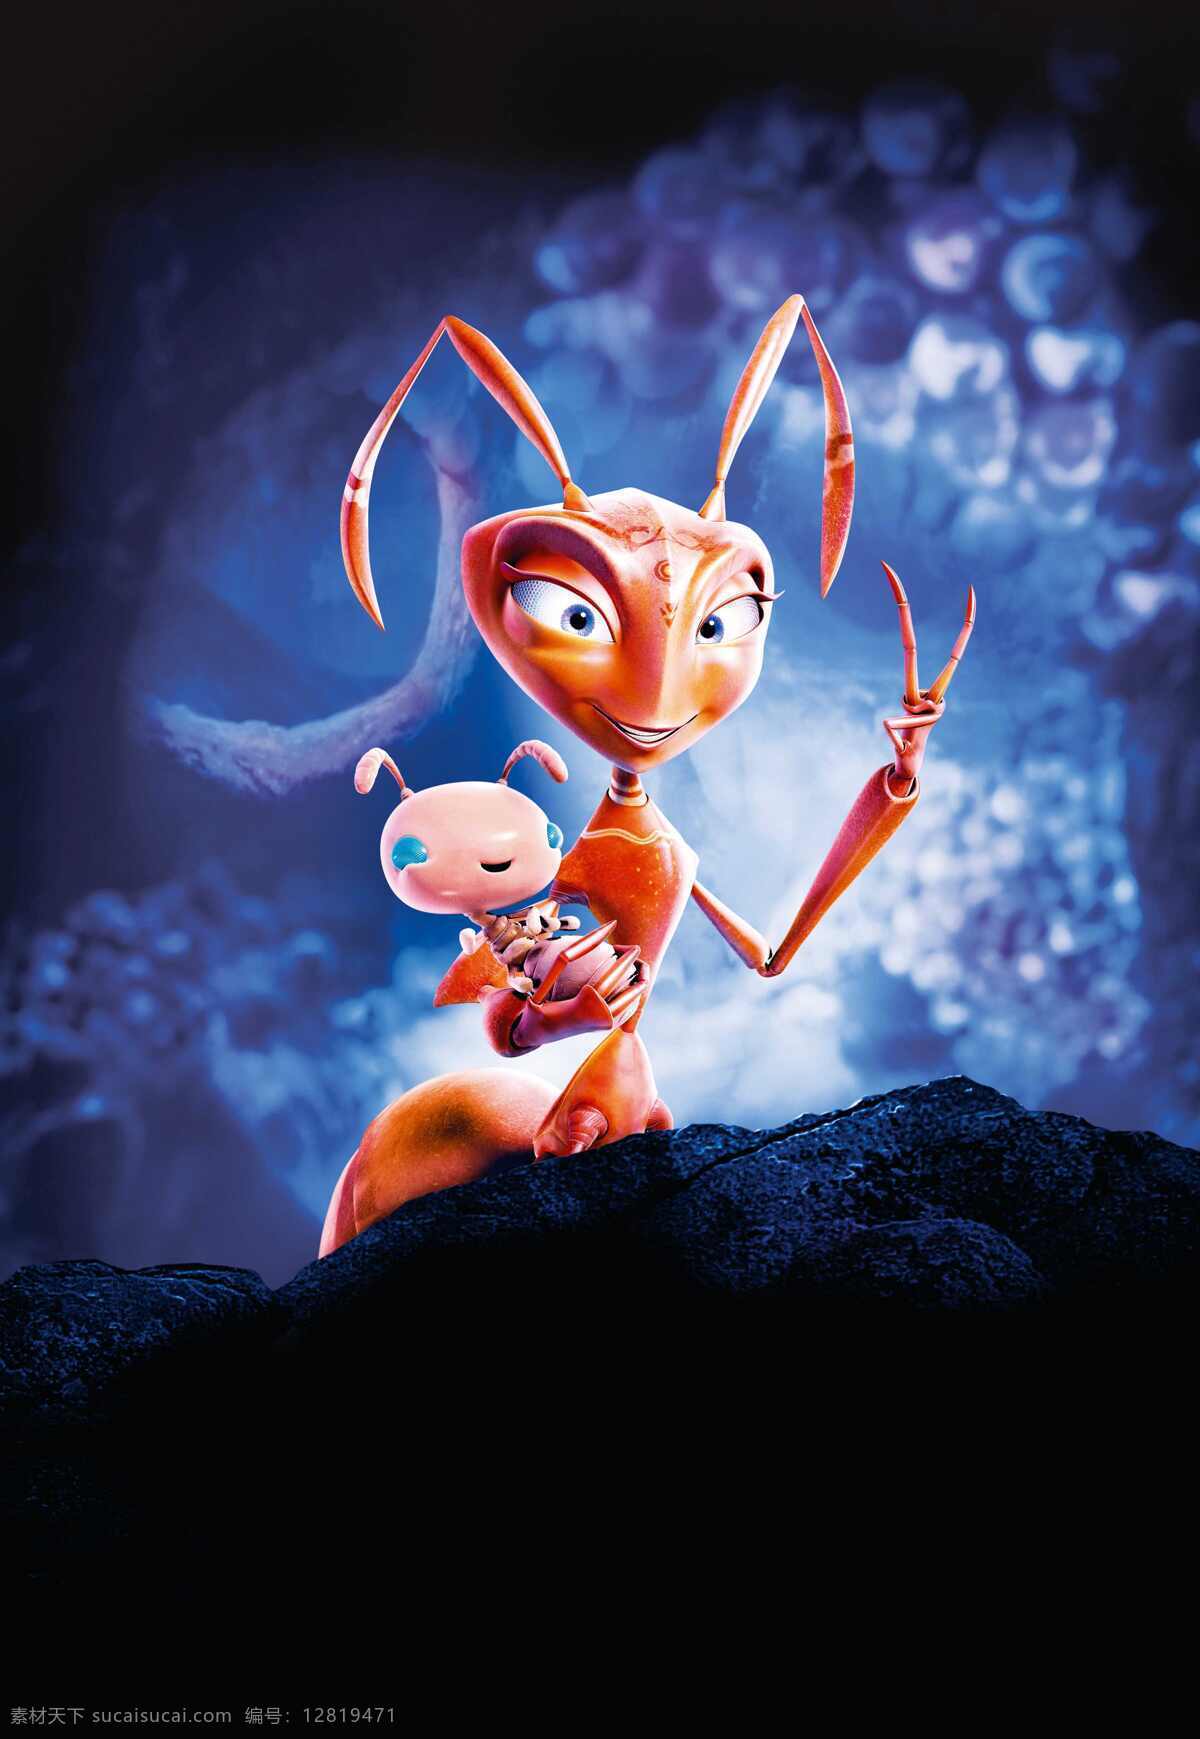 动漫 动物图片 宝宝 动漫动画 动漫动物 动漫人物 昆虫 蚂蚁 游戏 触角 巢穴 生物世界